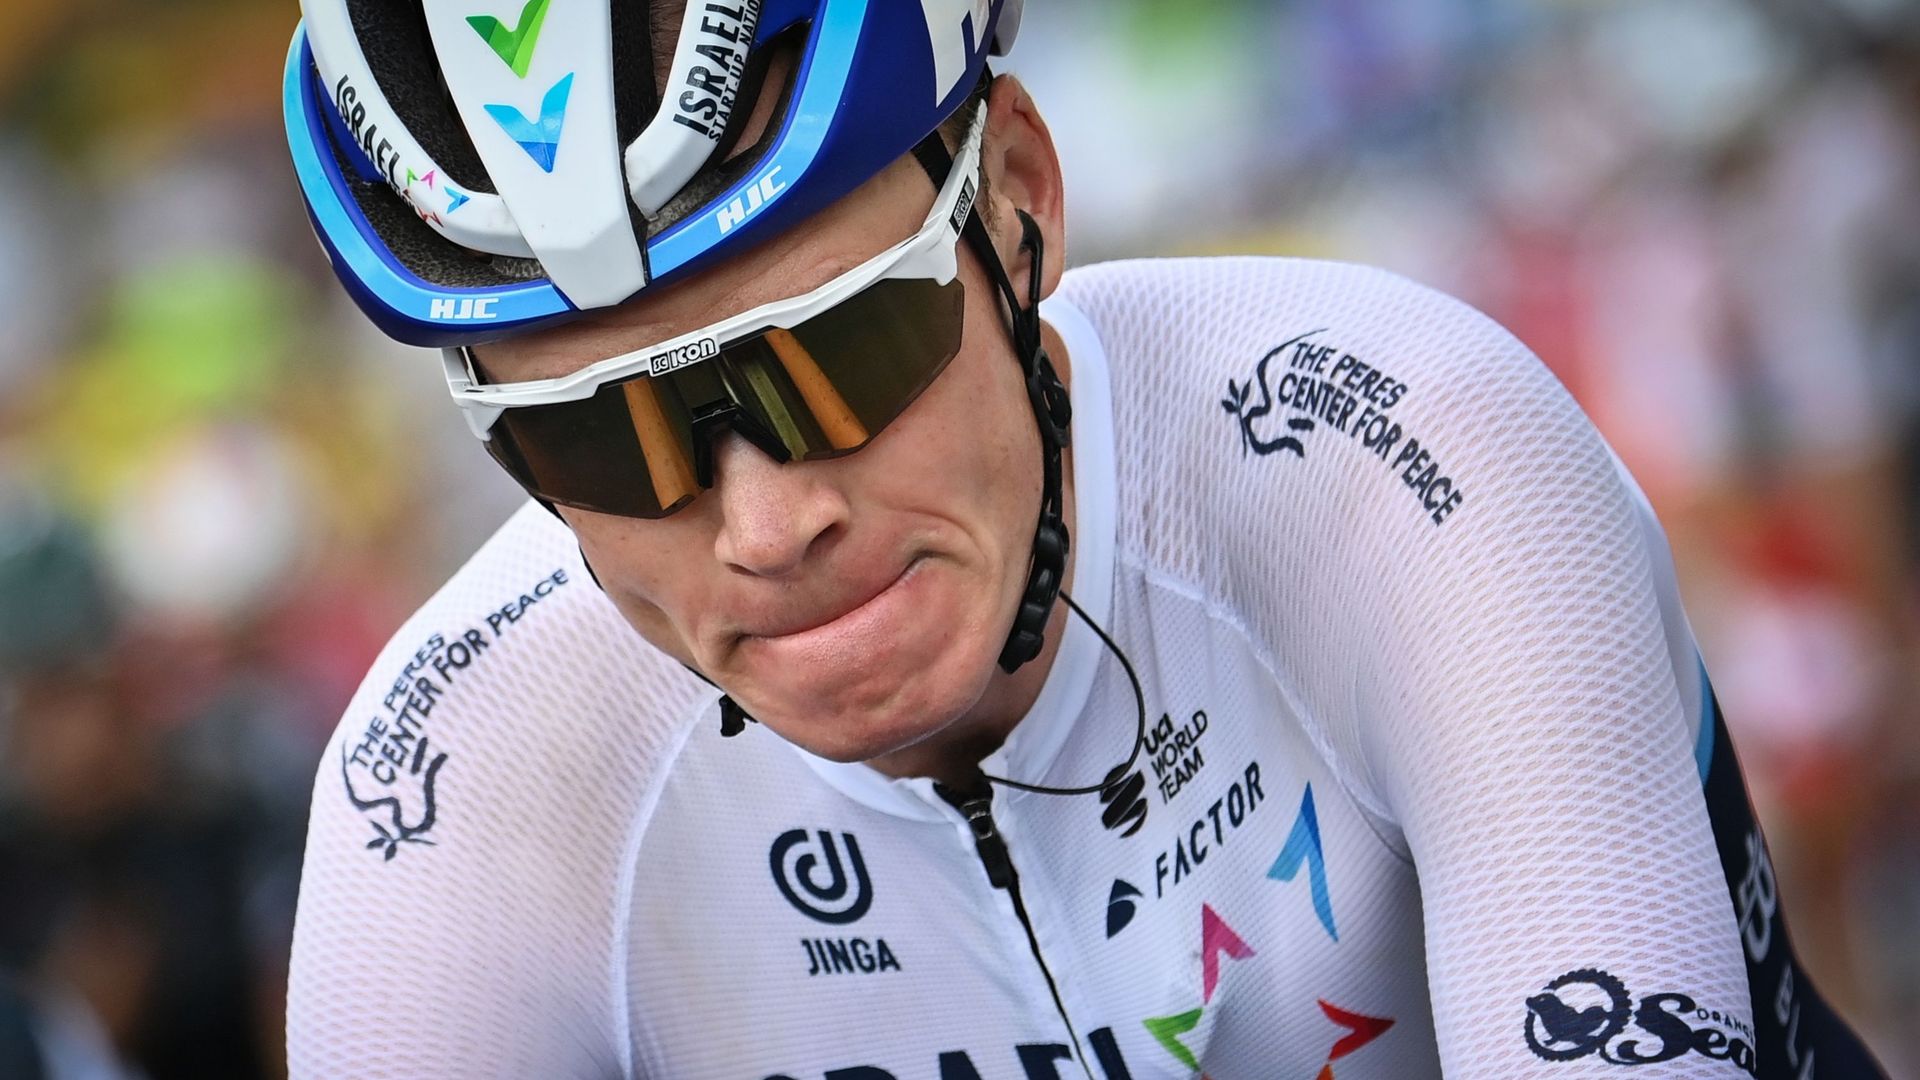 Cyclisme : Le quadruple vainqueur du Tour de France, Chris Froome, repousse son retour à la compétition